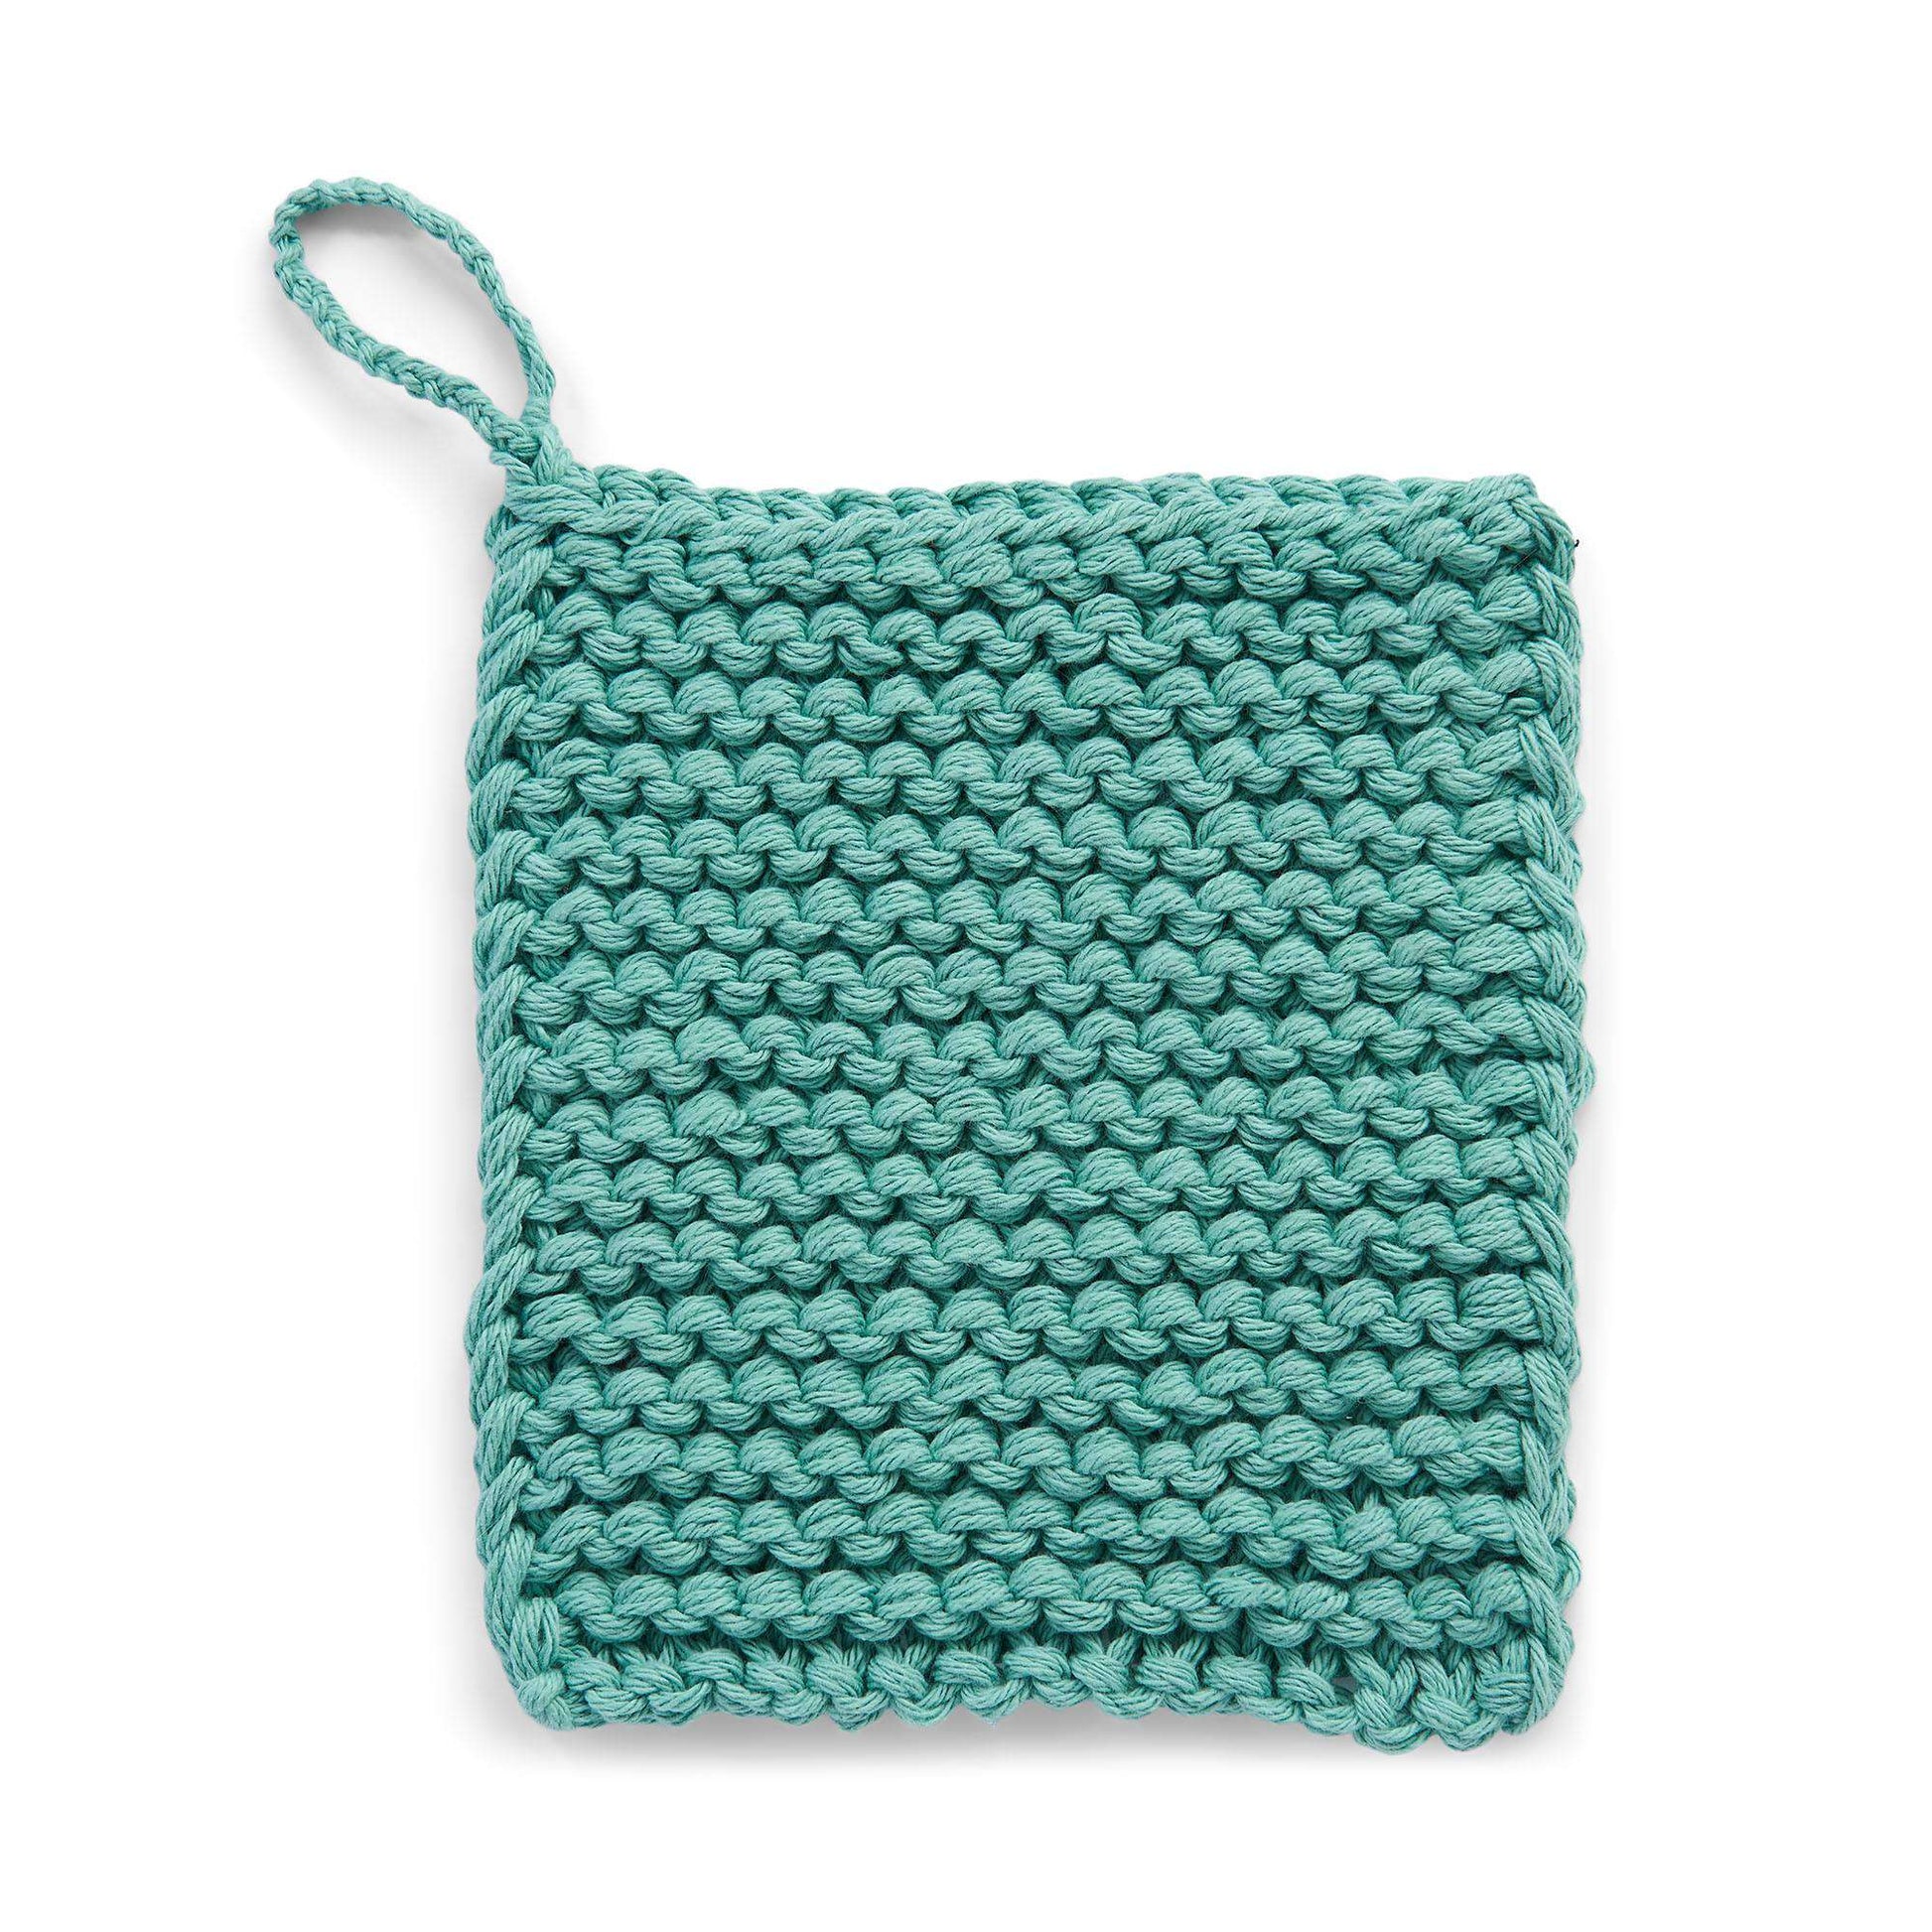 Free Lily Sugar'n Cream Knit Super-Fast Chunky Garter Stitch Dishcloth Pattern